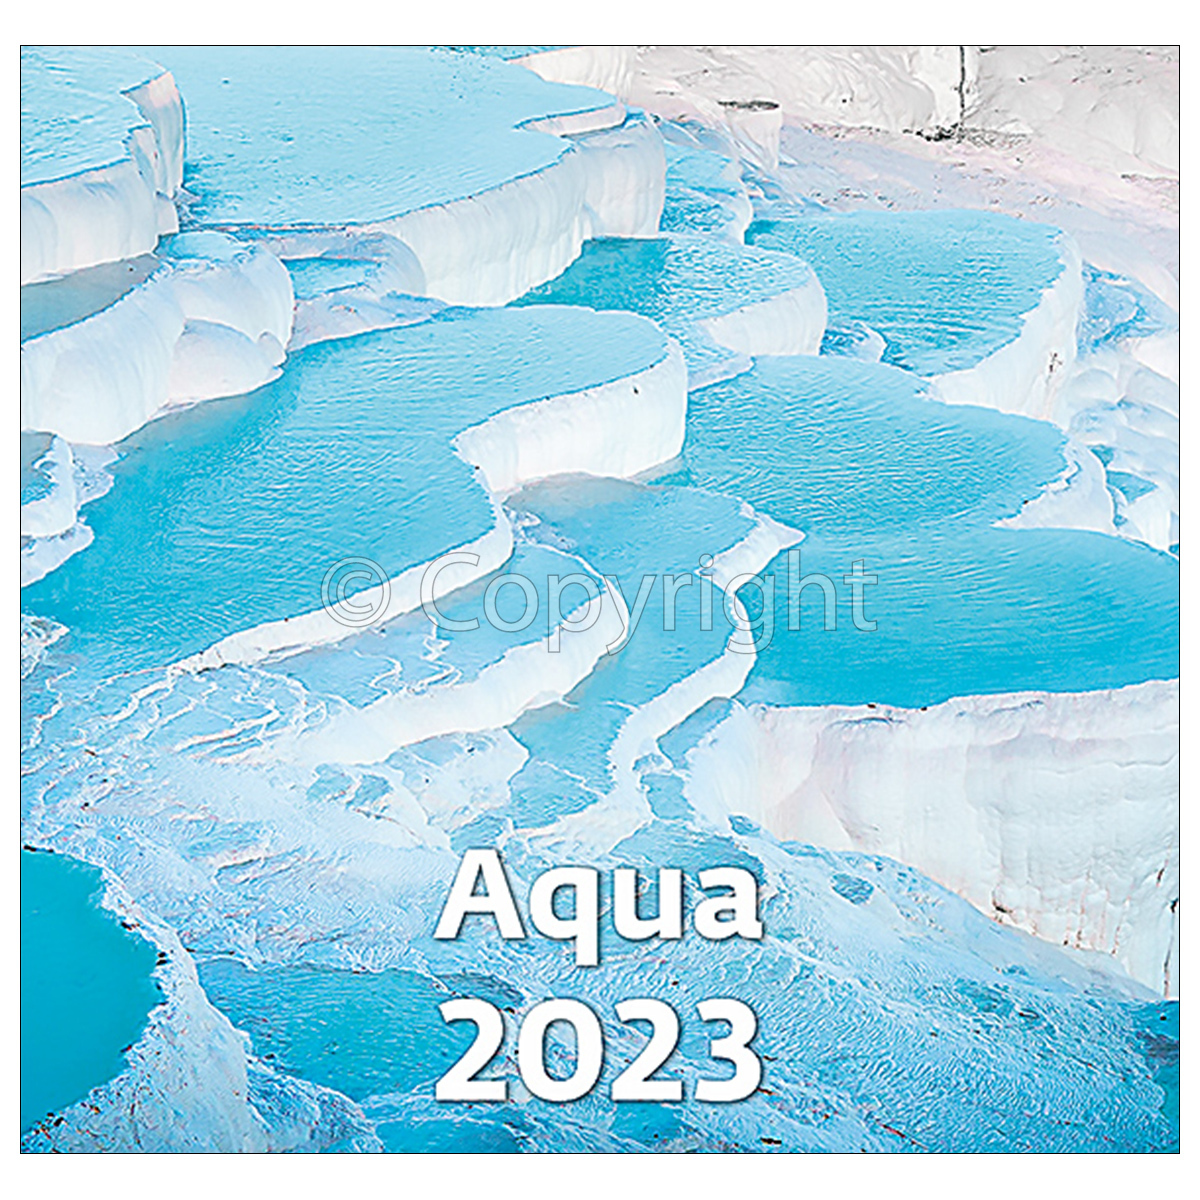 Aqua, képes falinaptár 2023